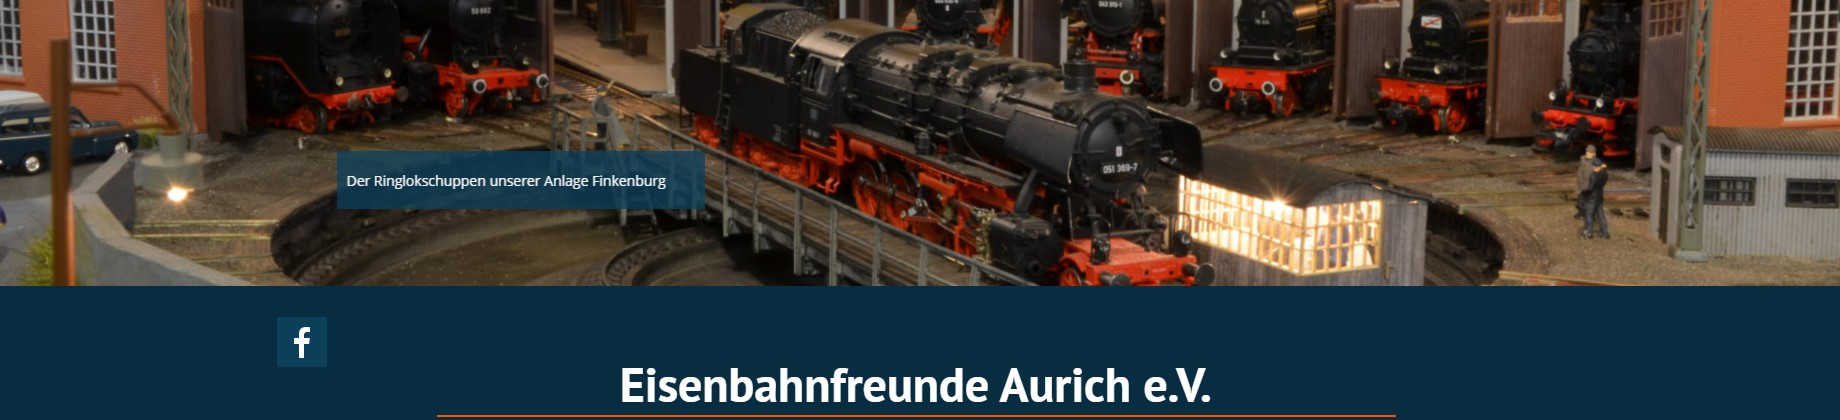 Eisenbahnfreunde Aurich e.V. – Aurich 26607